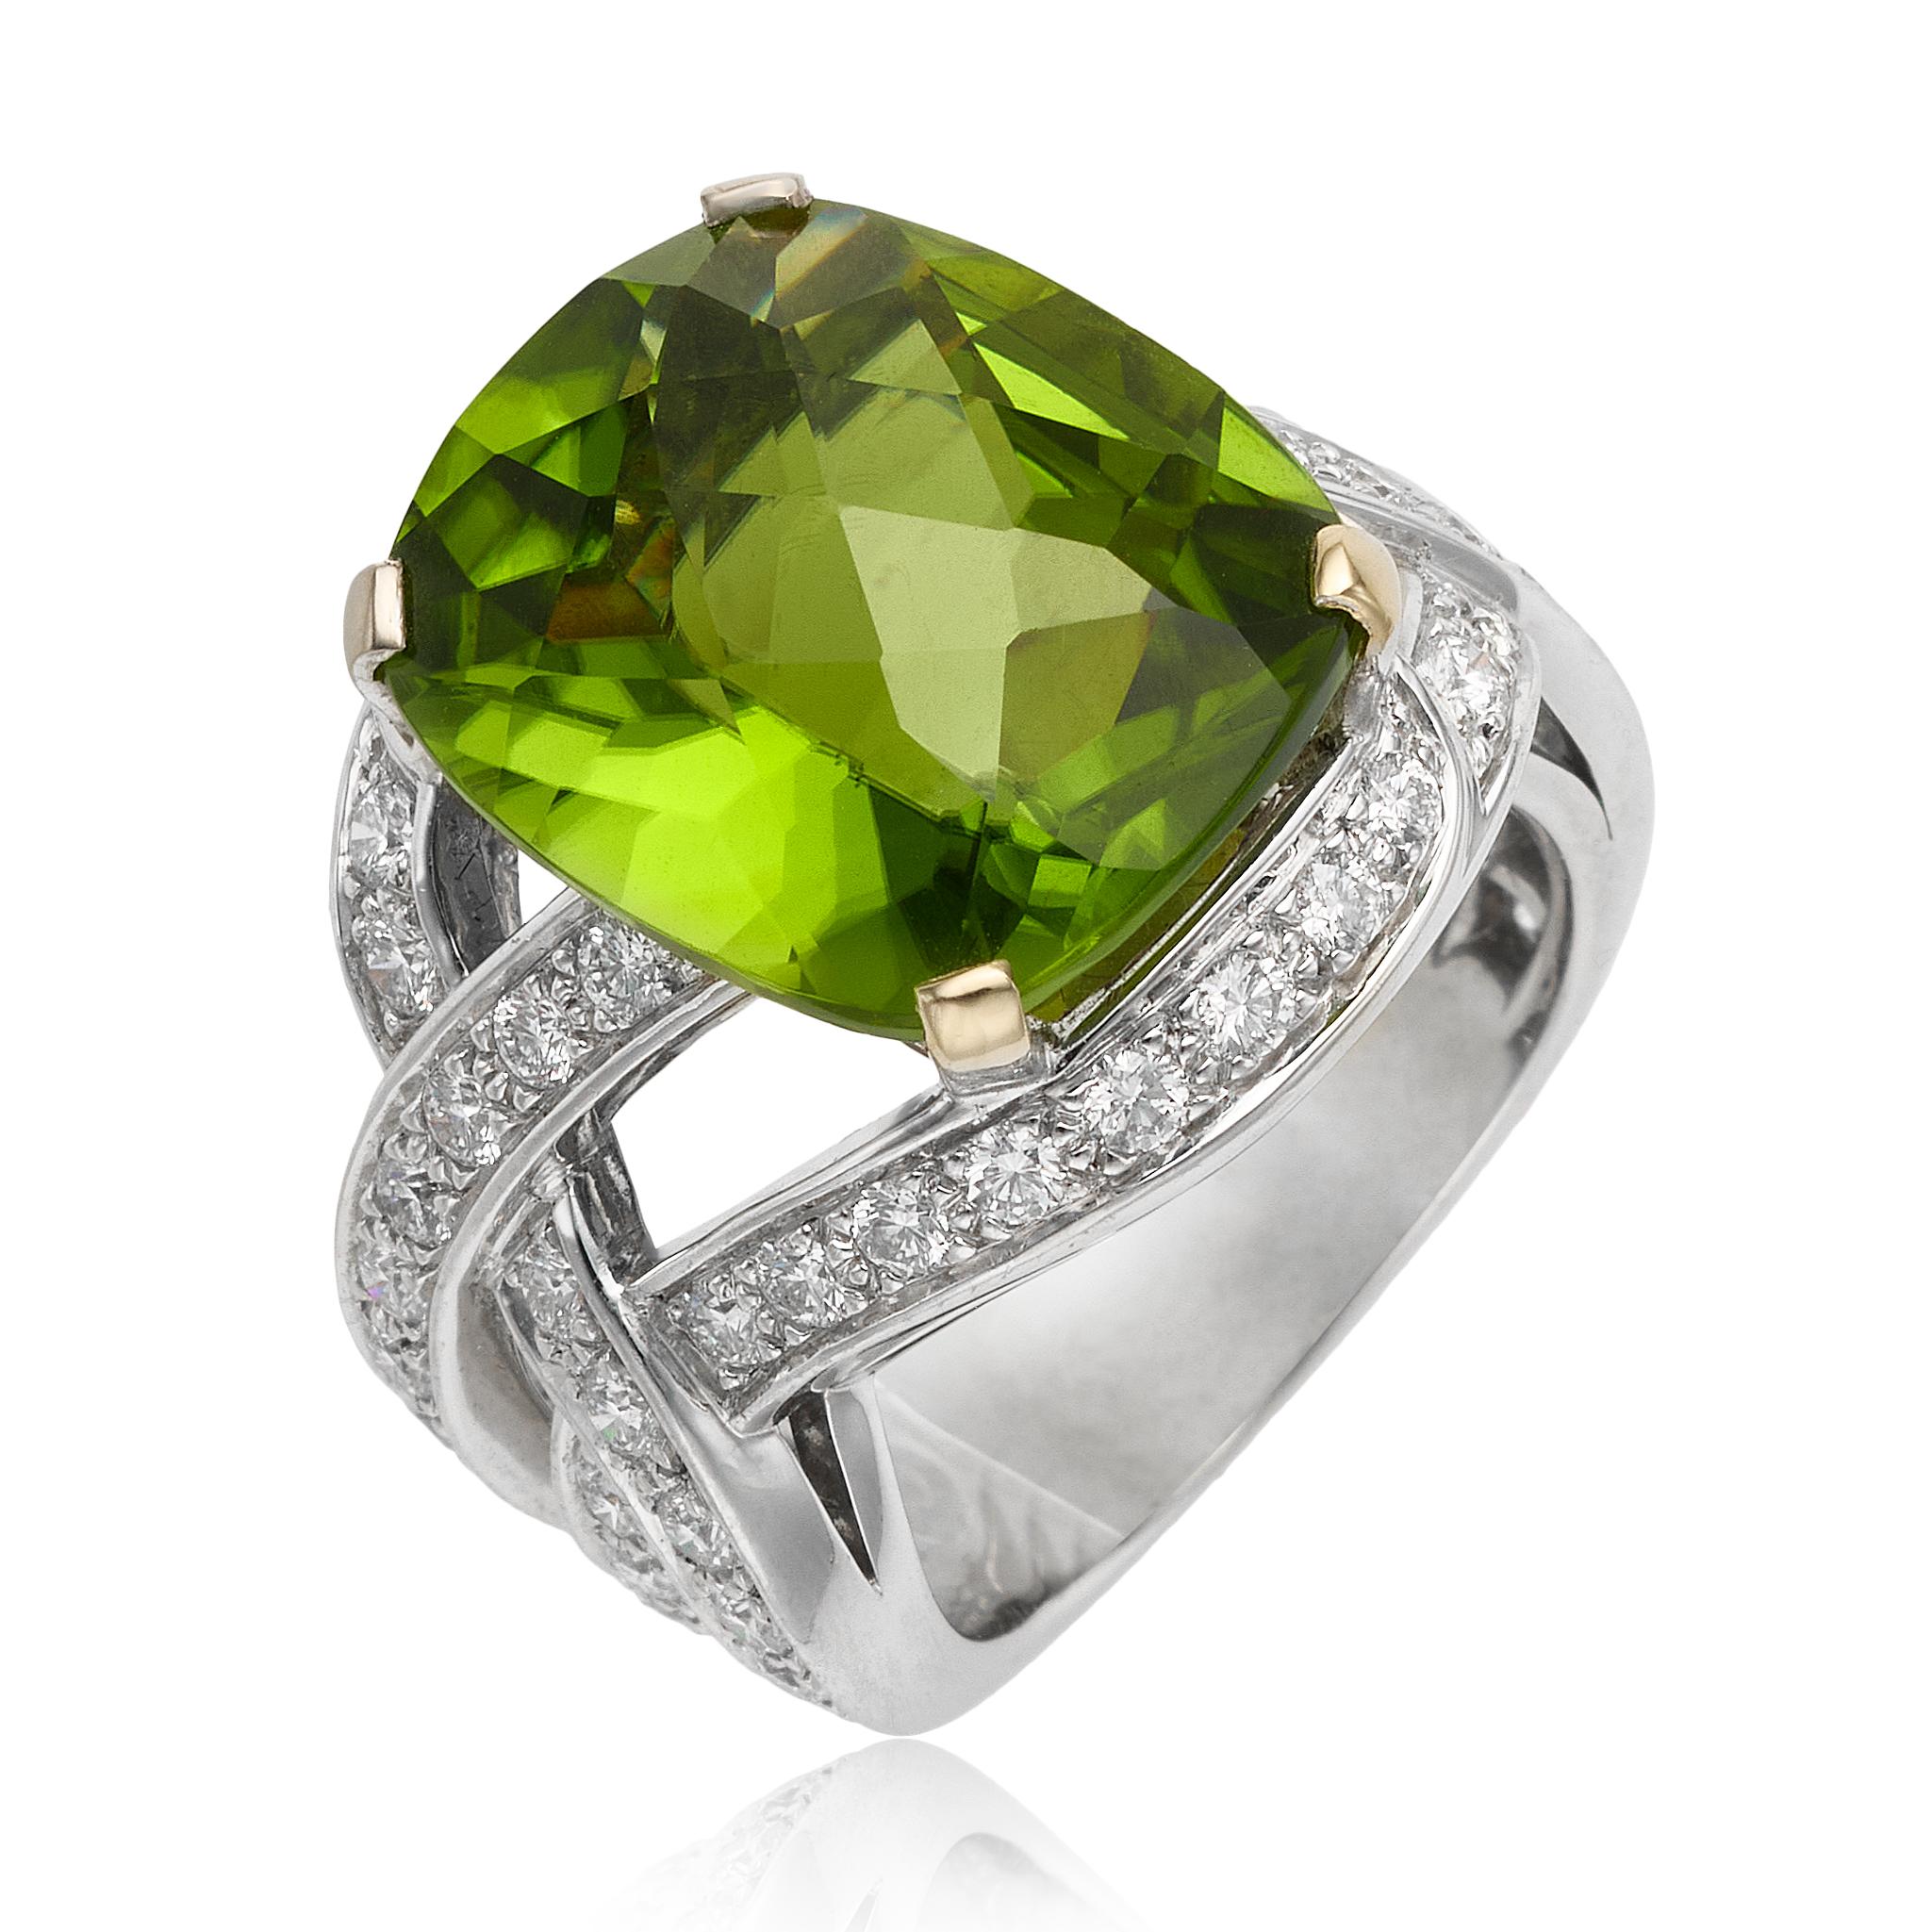 Ring aus 18 Karat Weißgold mit Peridot und Diamanten des Designers Boucheron. Dieser Ring ist mit einem 12,90 Karat schweren Peridot im Kissenschliff ausgestattet, der von runden Diamanten akzentuiert wird. Diese Diamanten sind entlang des